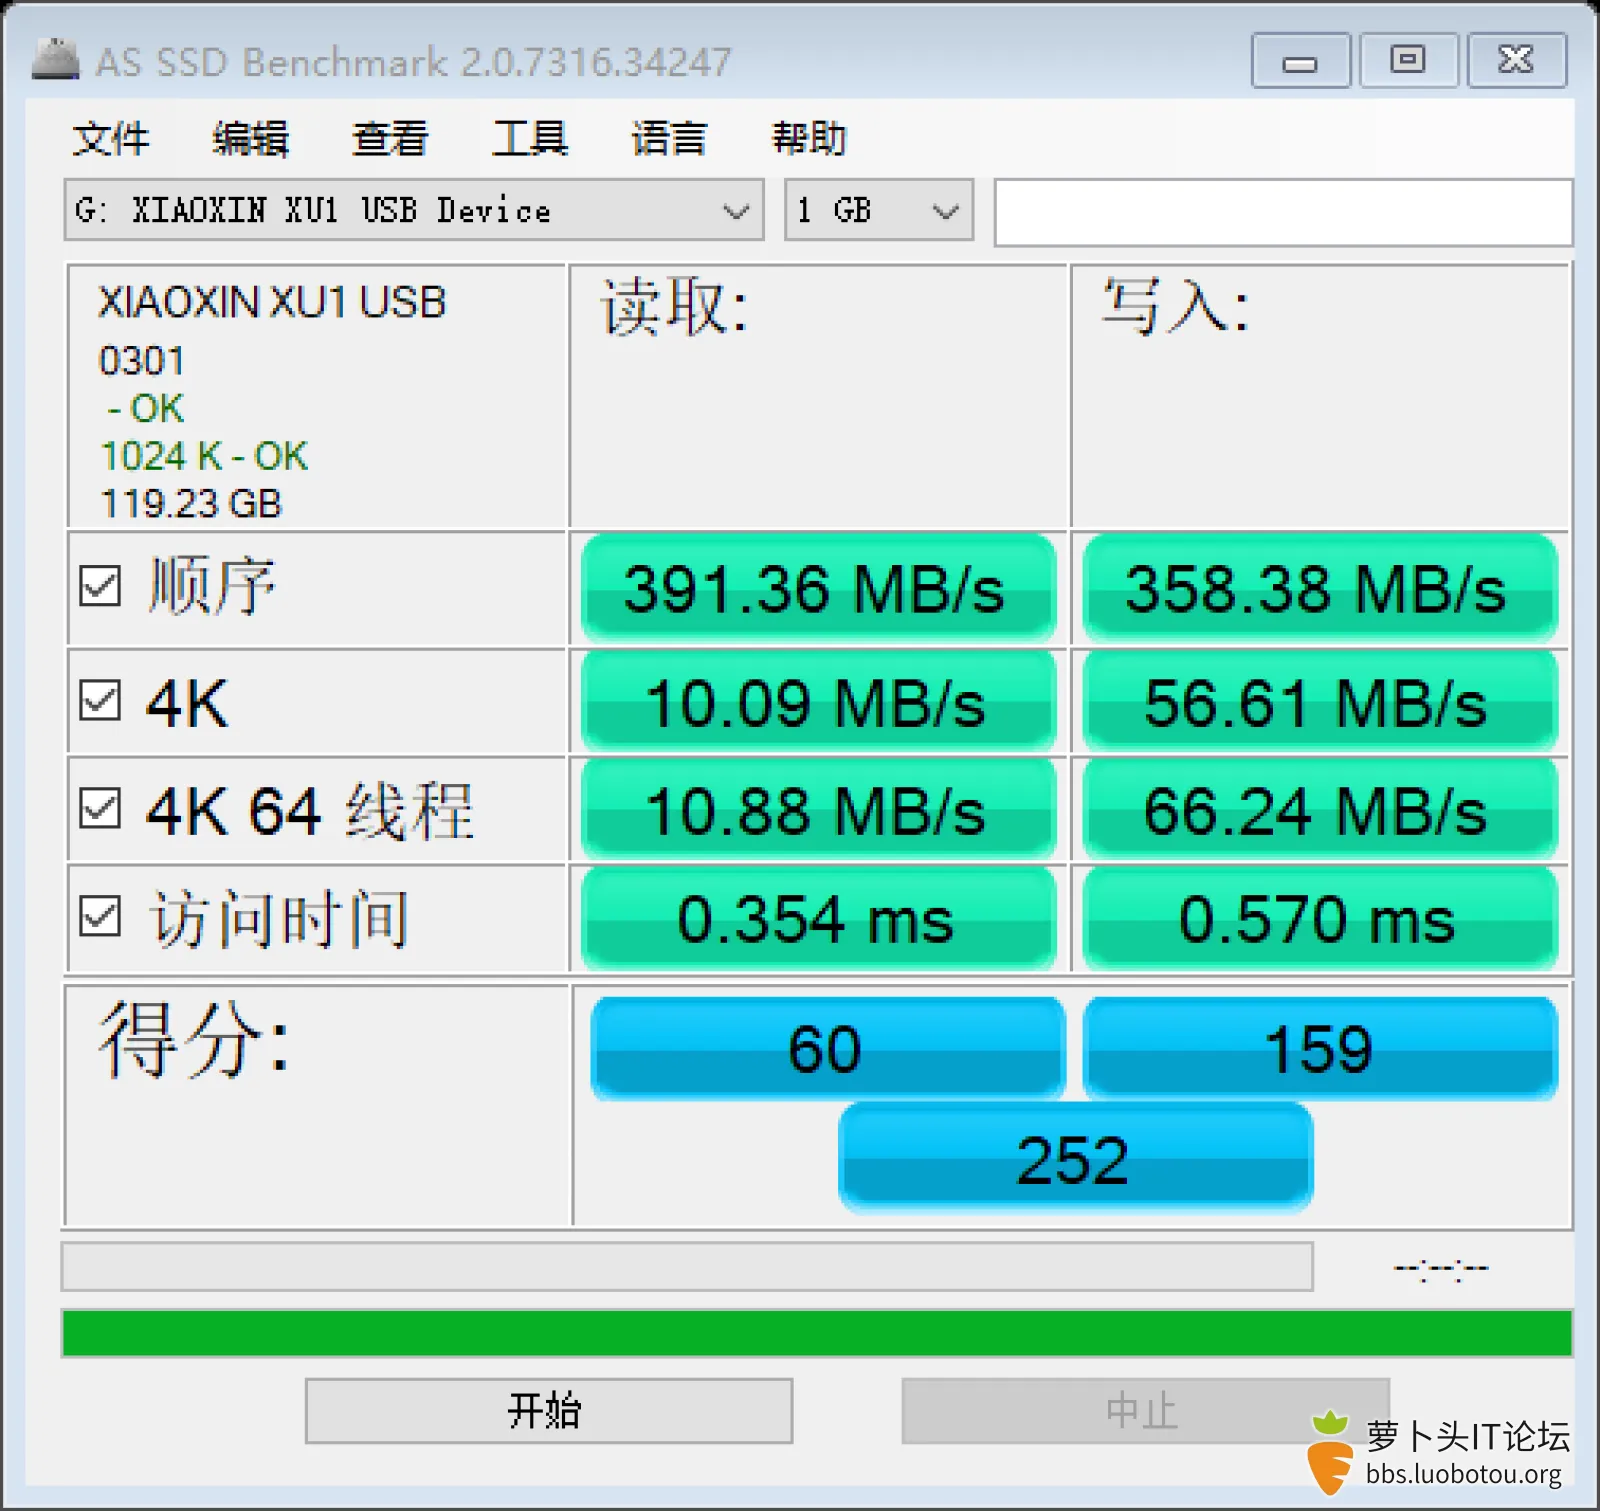 as-ssd-bench XIAOXIN XU1 USB  2023.3.23 14-31-22.png